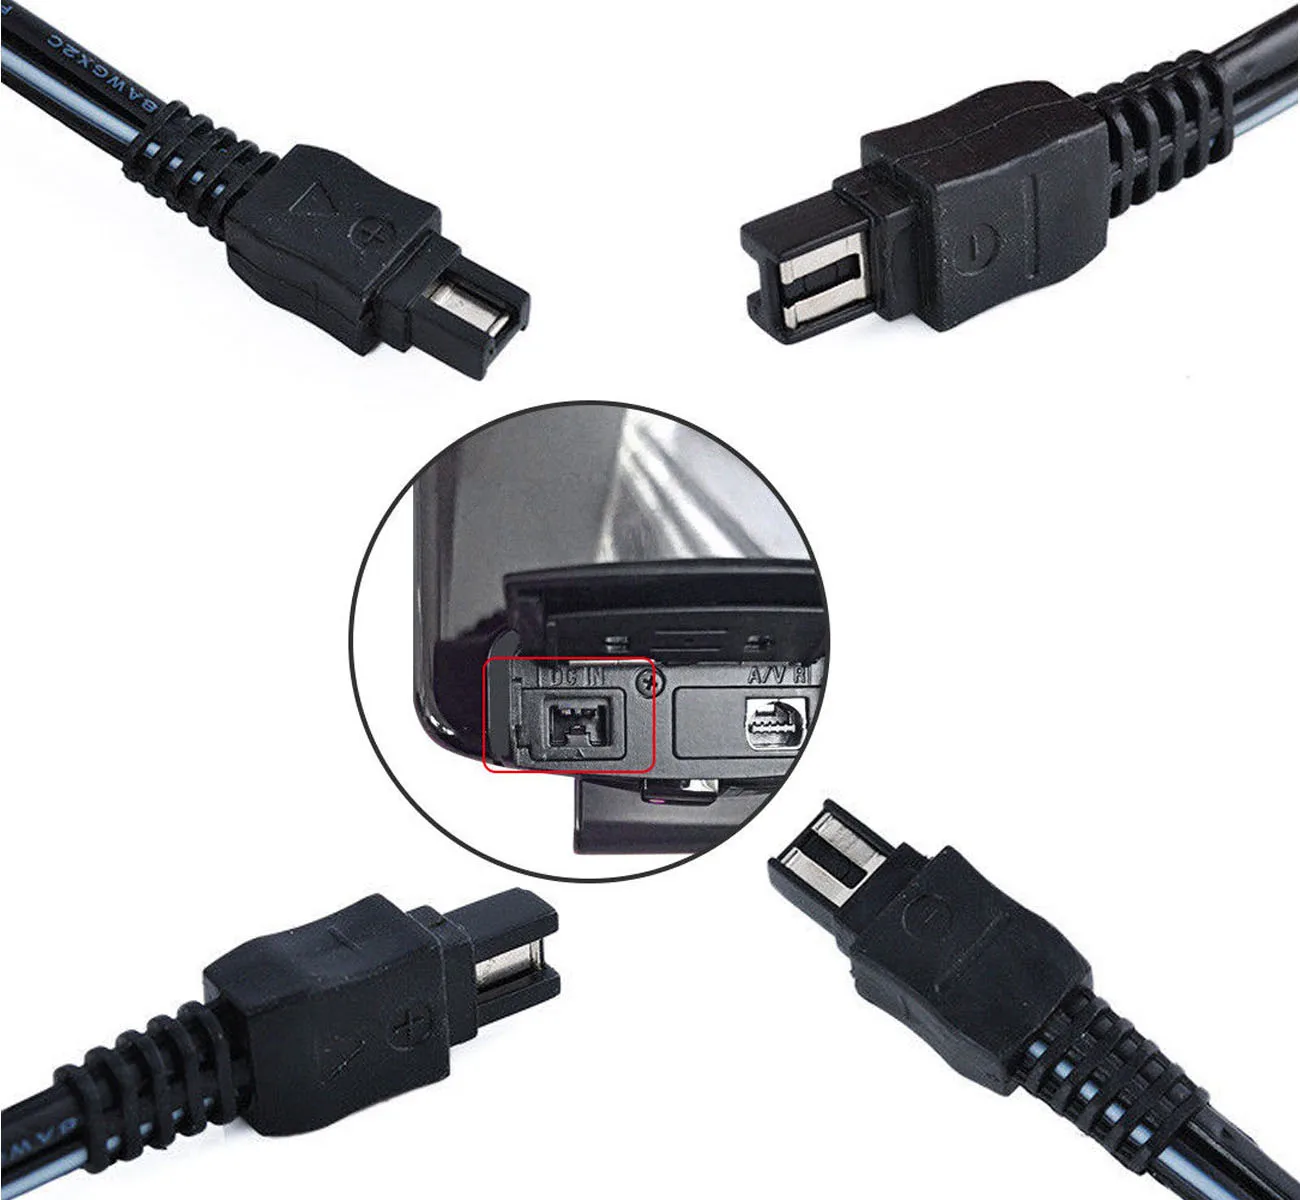 AC Мощность адаптер Зарядное устройство для sony HDR-CX450E, DR-CX455E, HDR-CX480E, HDR-CX485E Handycam